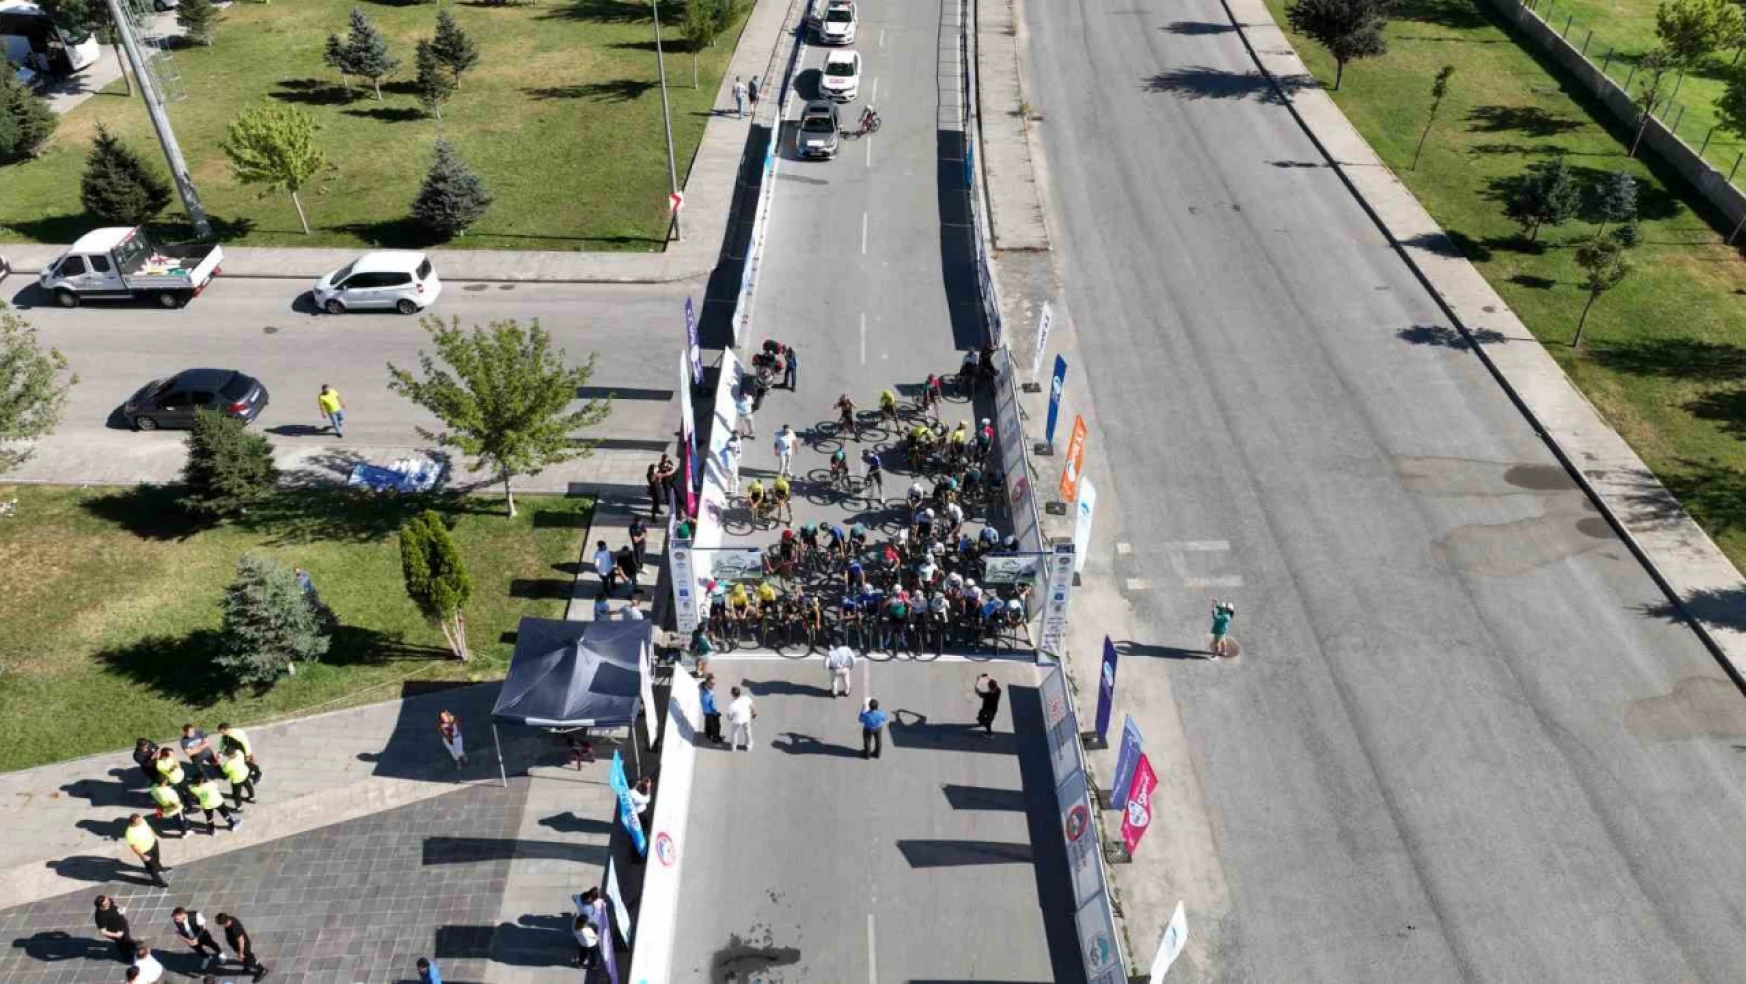 Uluslararası Yol Bisikleti Yarışları'nda Kayseri tam not aldı